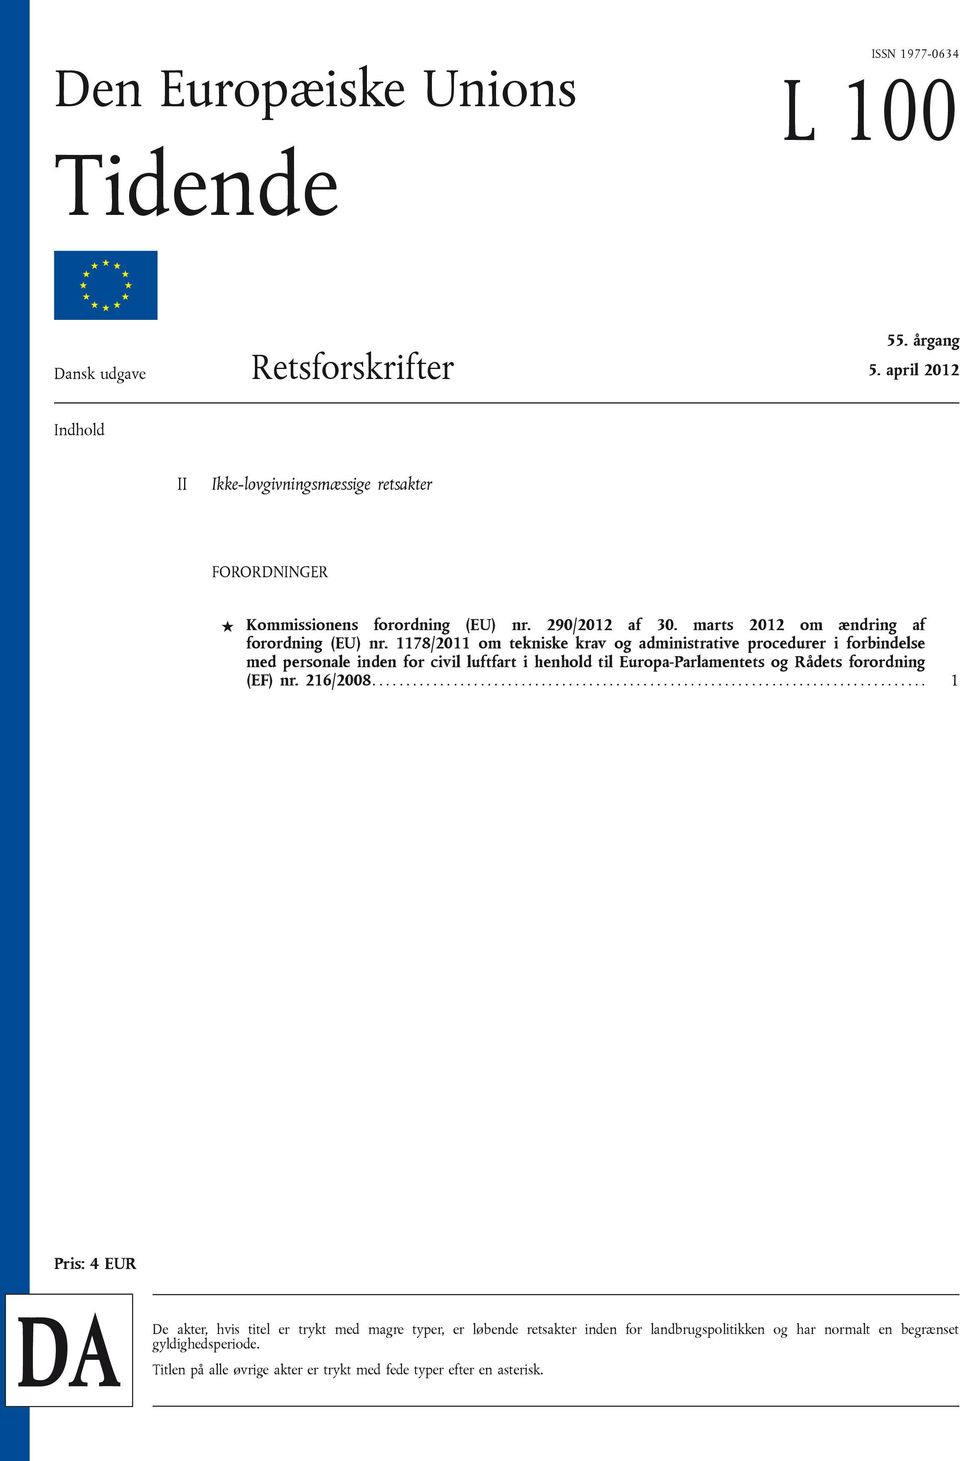 1178/2011 om tekniske krav og administrative procedurer i forbindelse med personale inden for civil luftfart i henhold til Europa-Parlamentets og Rådets forordning (EF) nr. 216/2008.